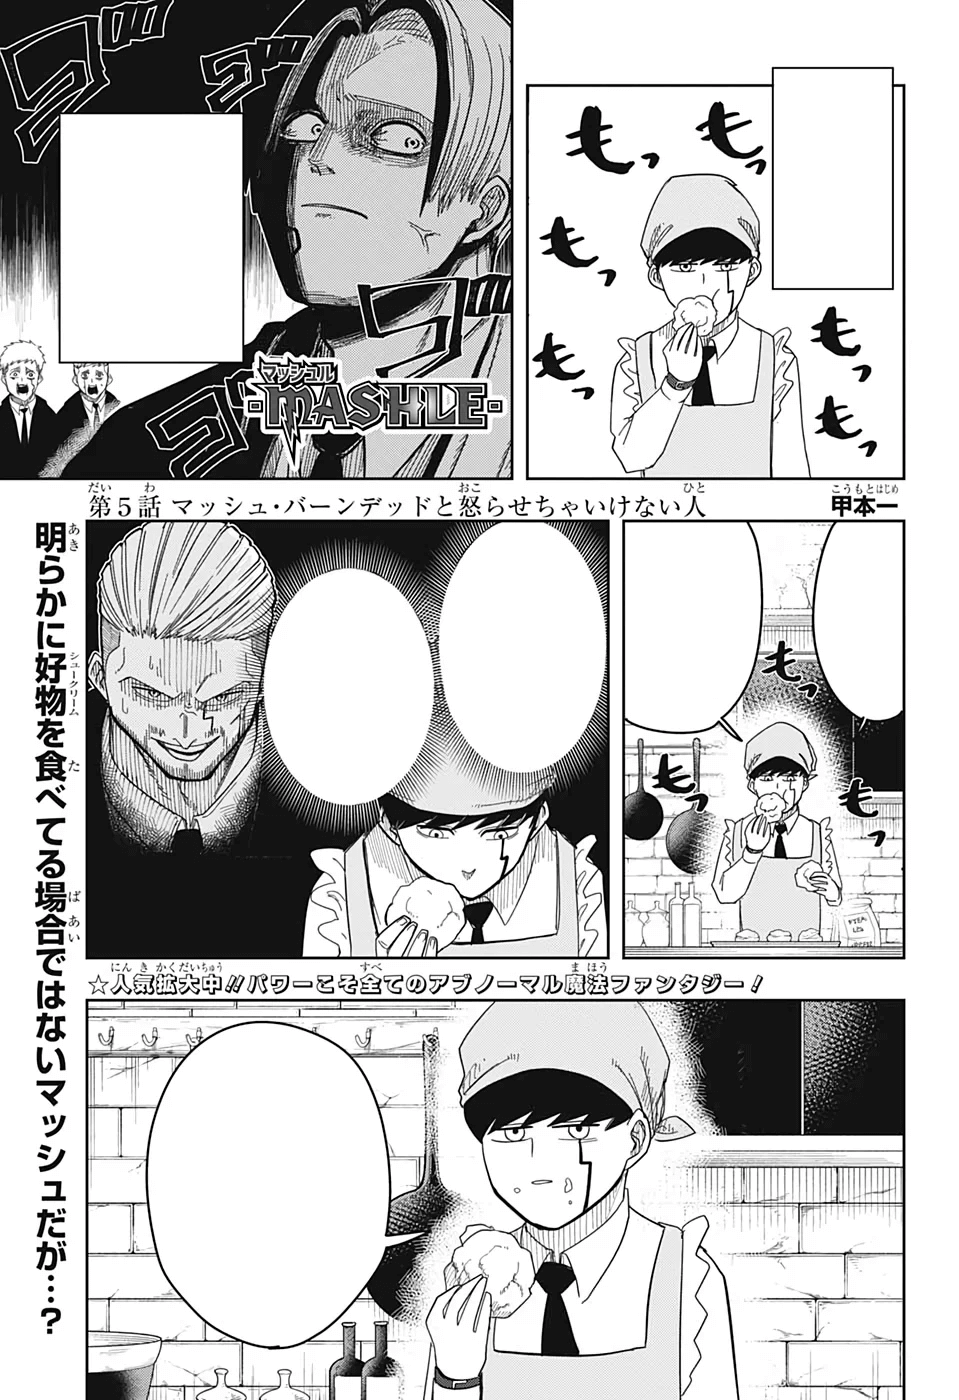 Mashle Capítulo 89 - Manga Online